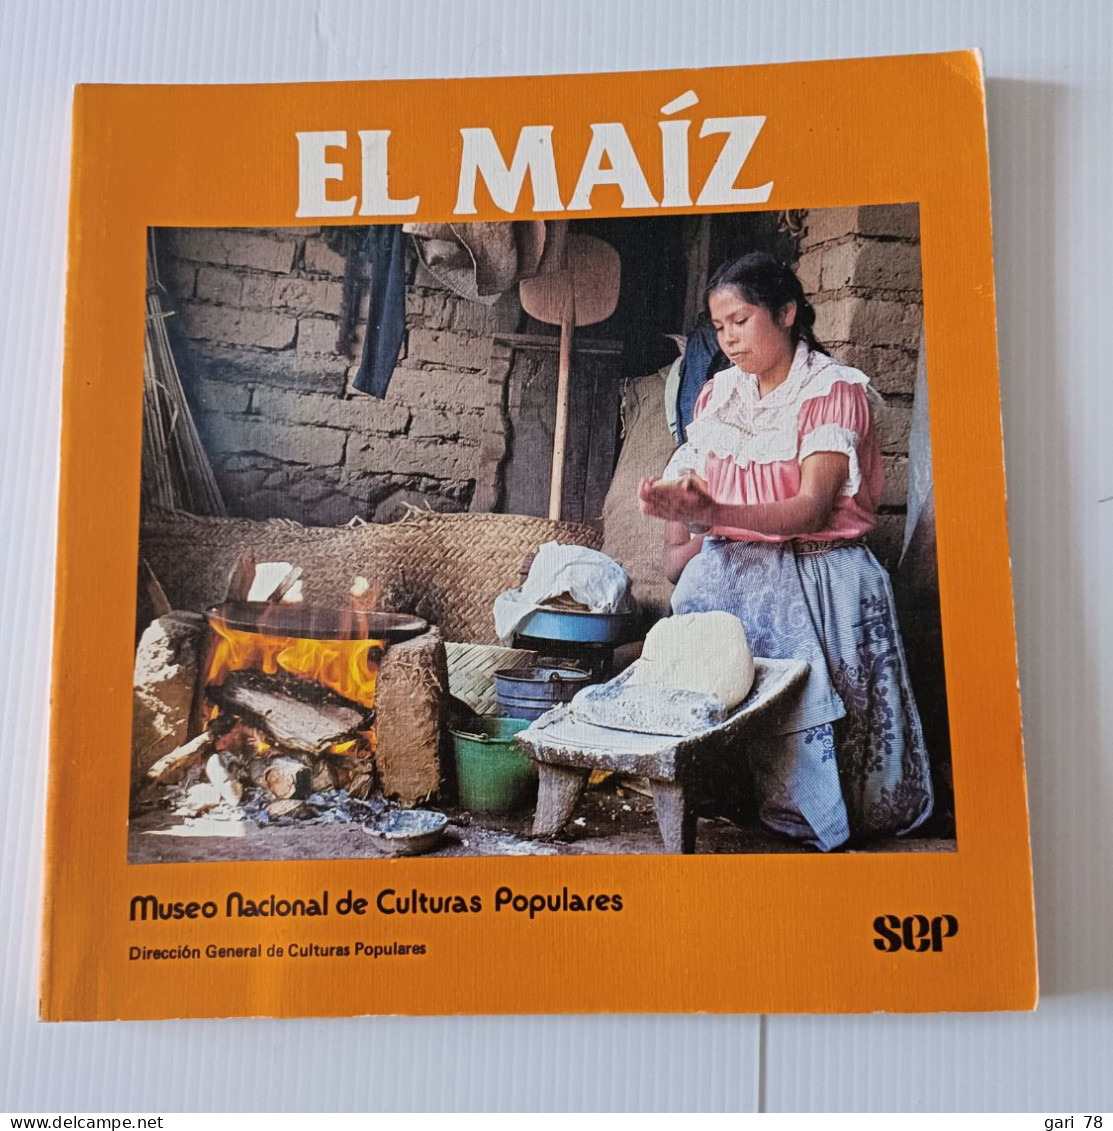 EL MAIZ, Fundamento De La Cultura Popular Mexicana - Museo Nacional De Culturas Populares - Cultura